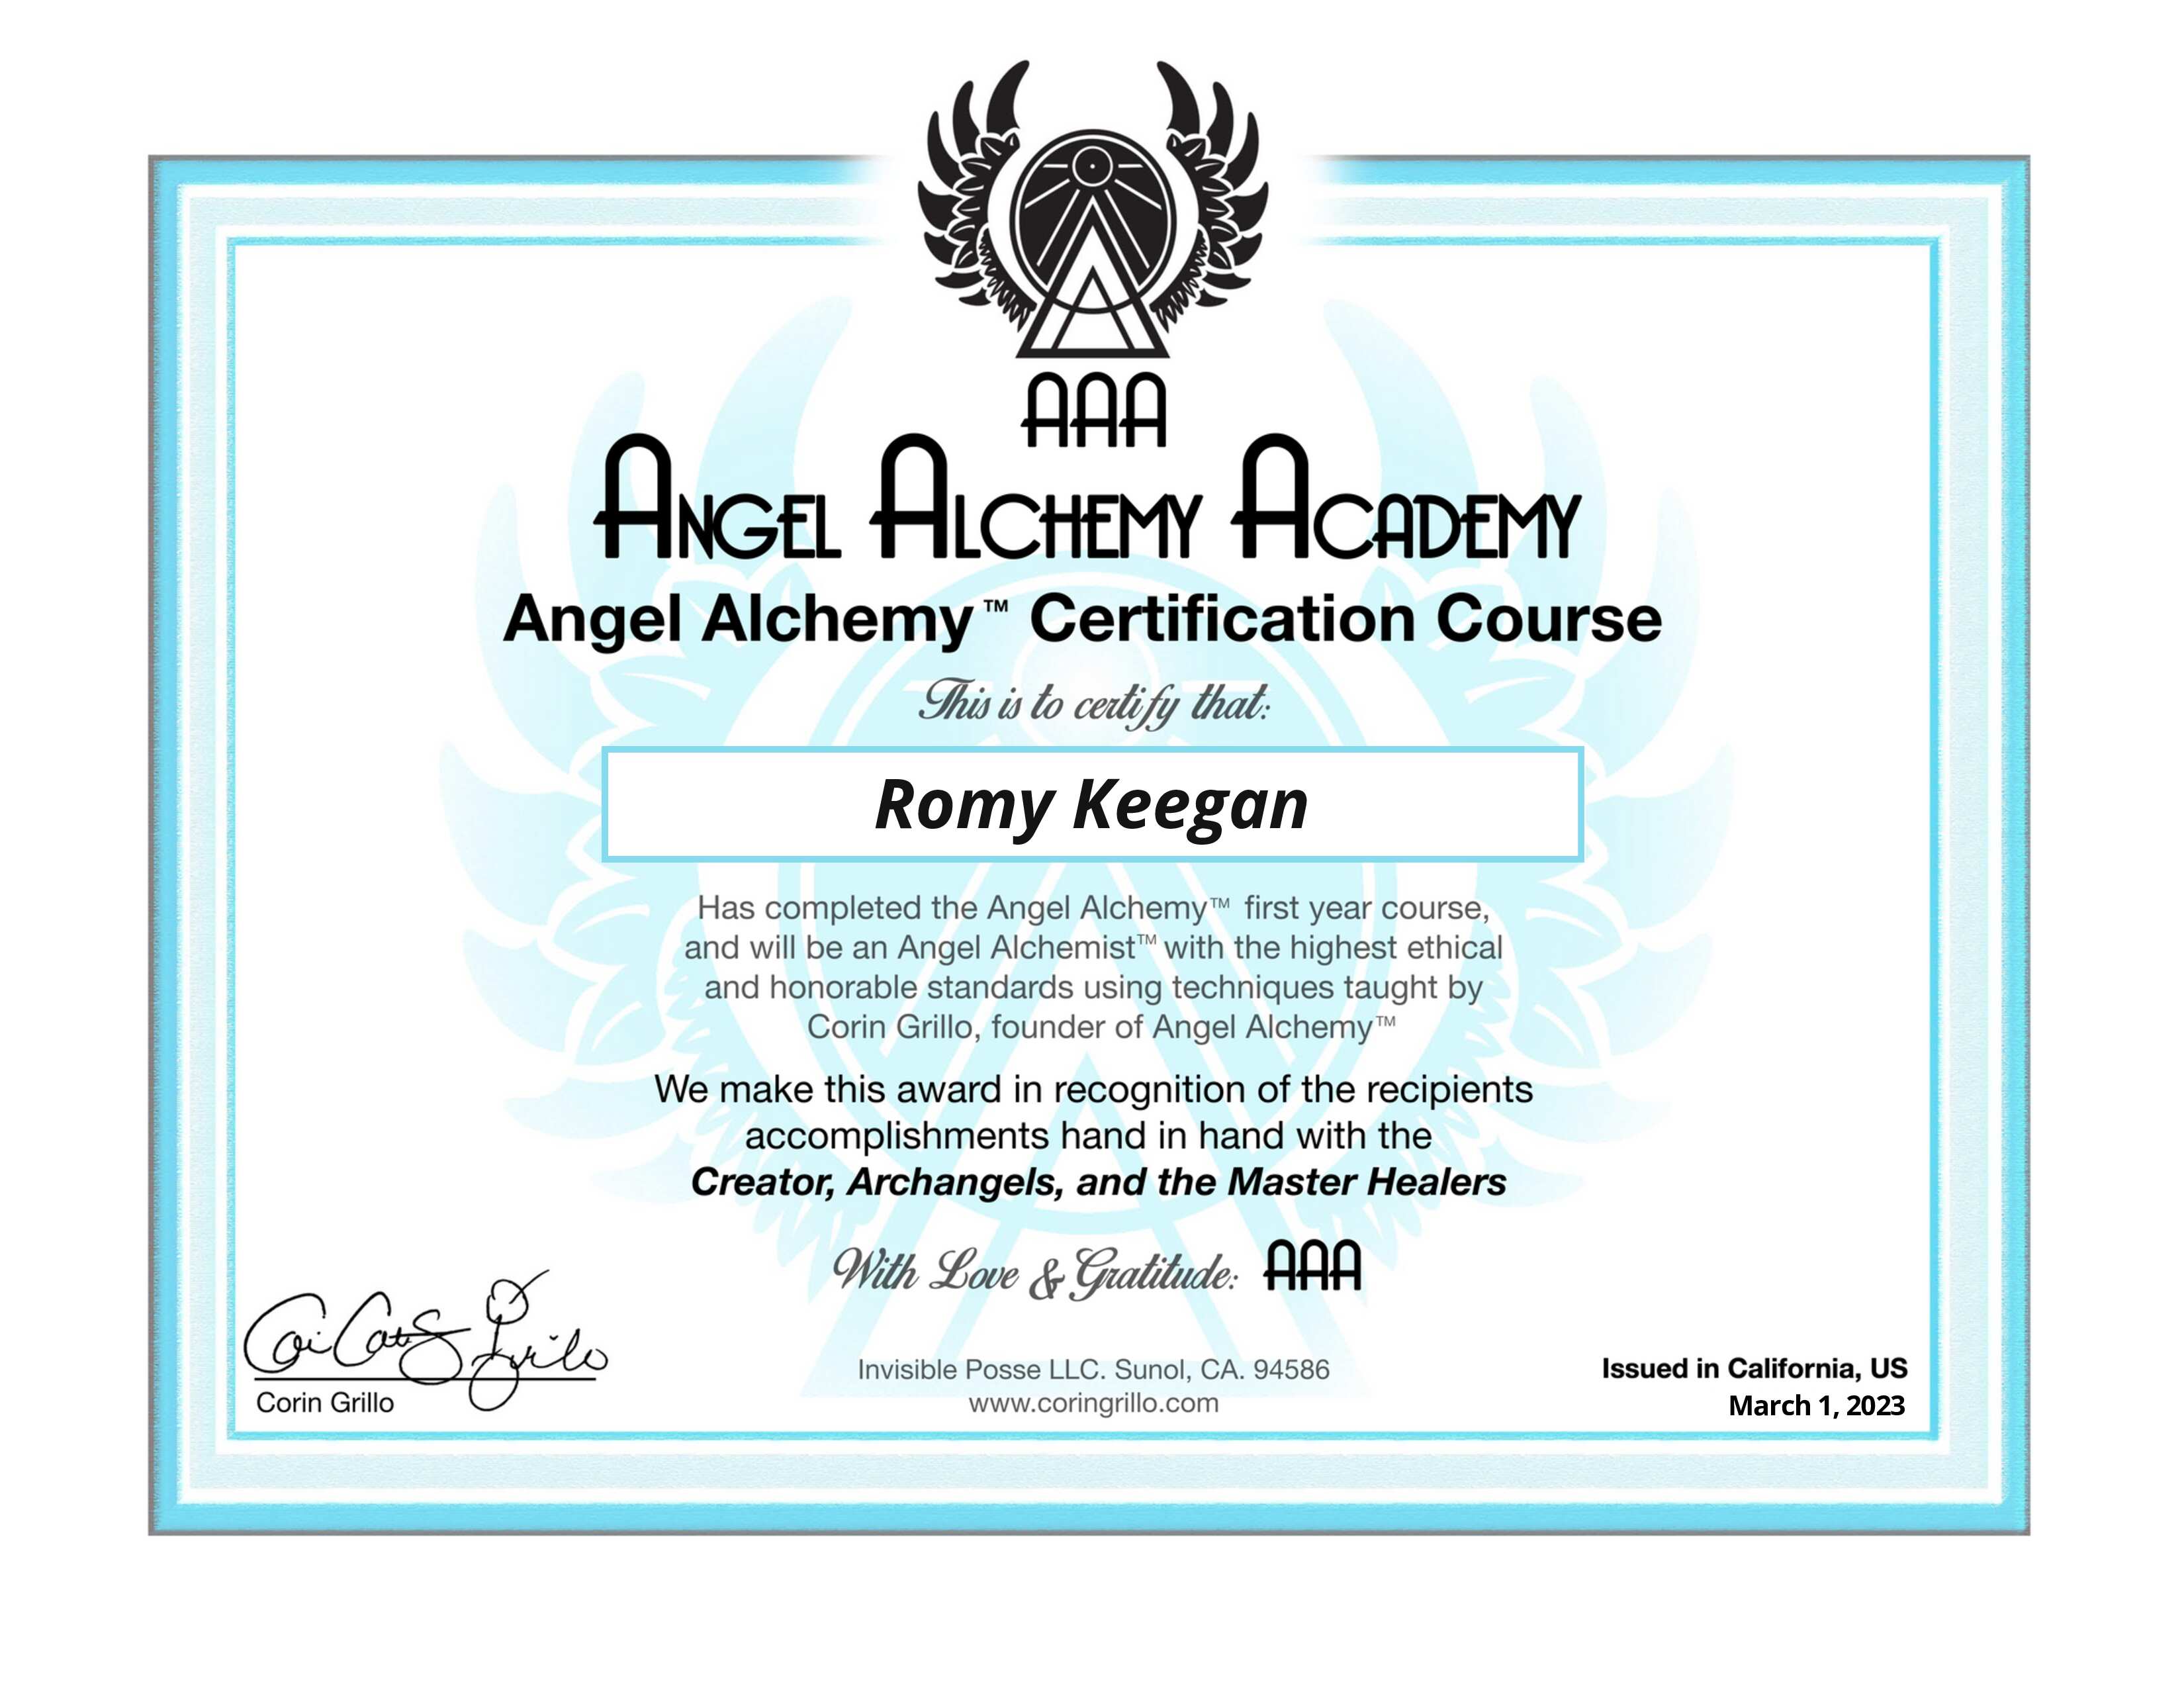 Angel Alchemy Academy Certificate